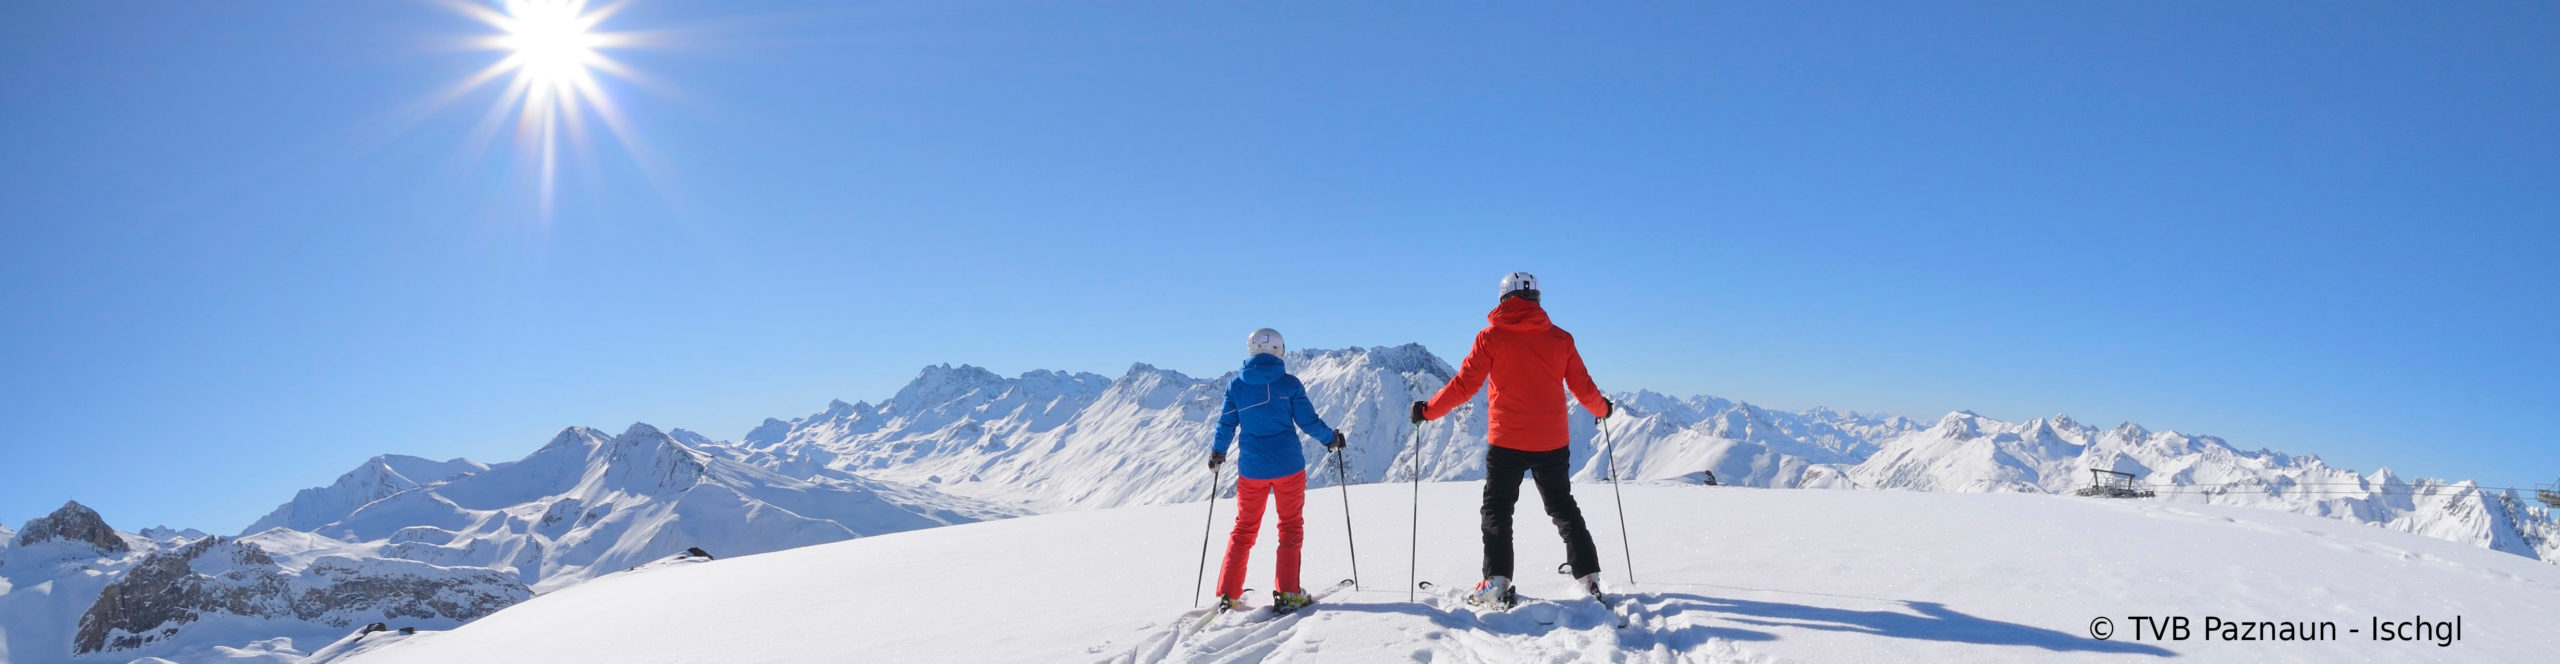 ISCHGL Opening – Skiwochenende mit 3 Skitagen im 4 Sterne WellnessHotel mit Schwimmbad – ab Freitag früh 